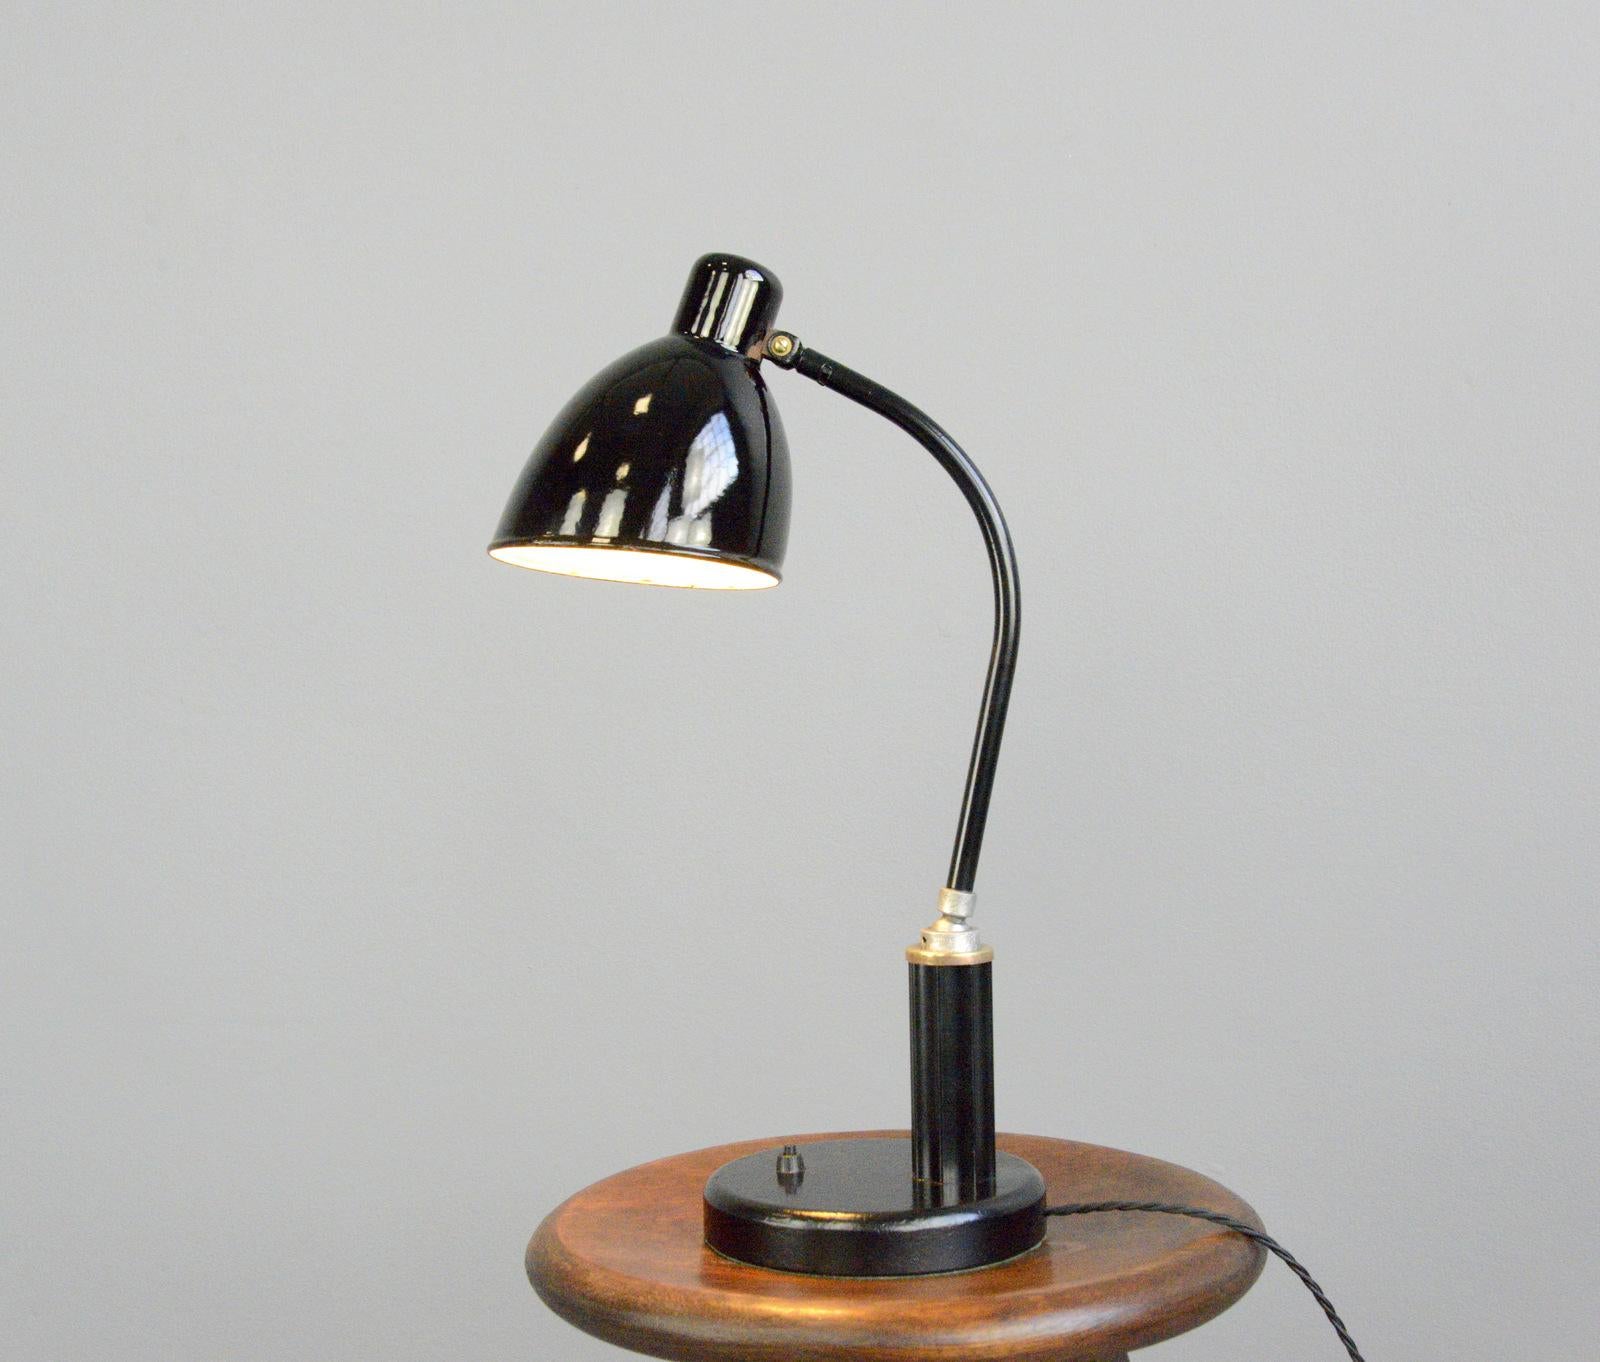 Bauhaus Favorit Model Desk Lamp by Molitor, circa 1930s